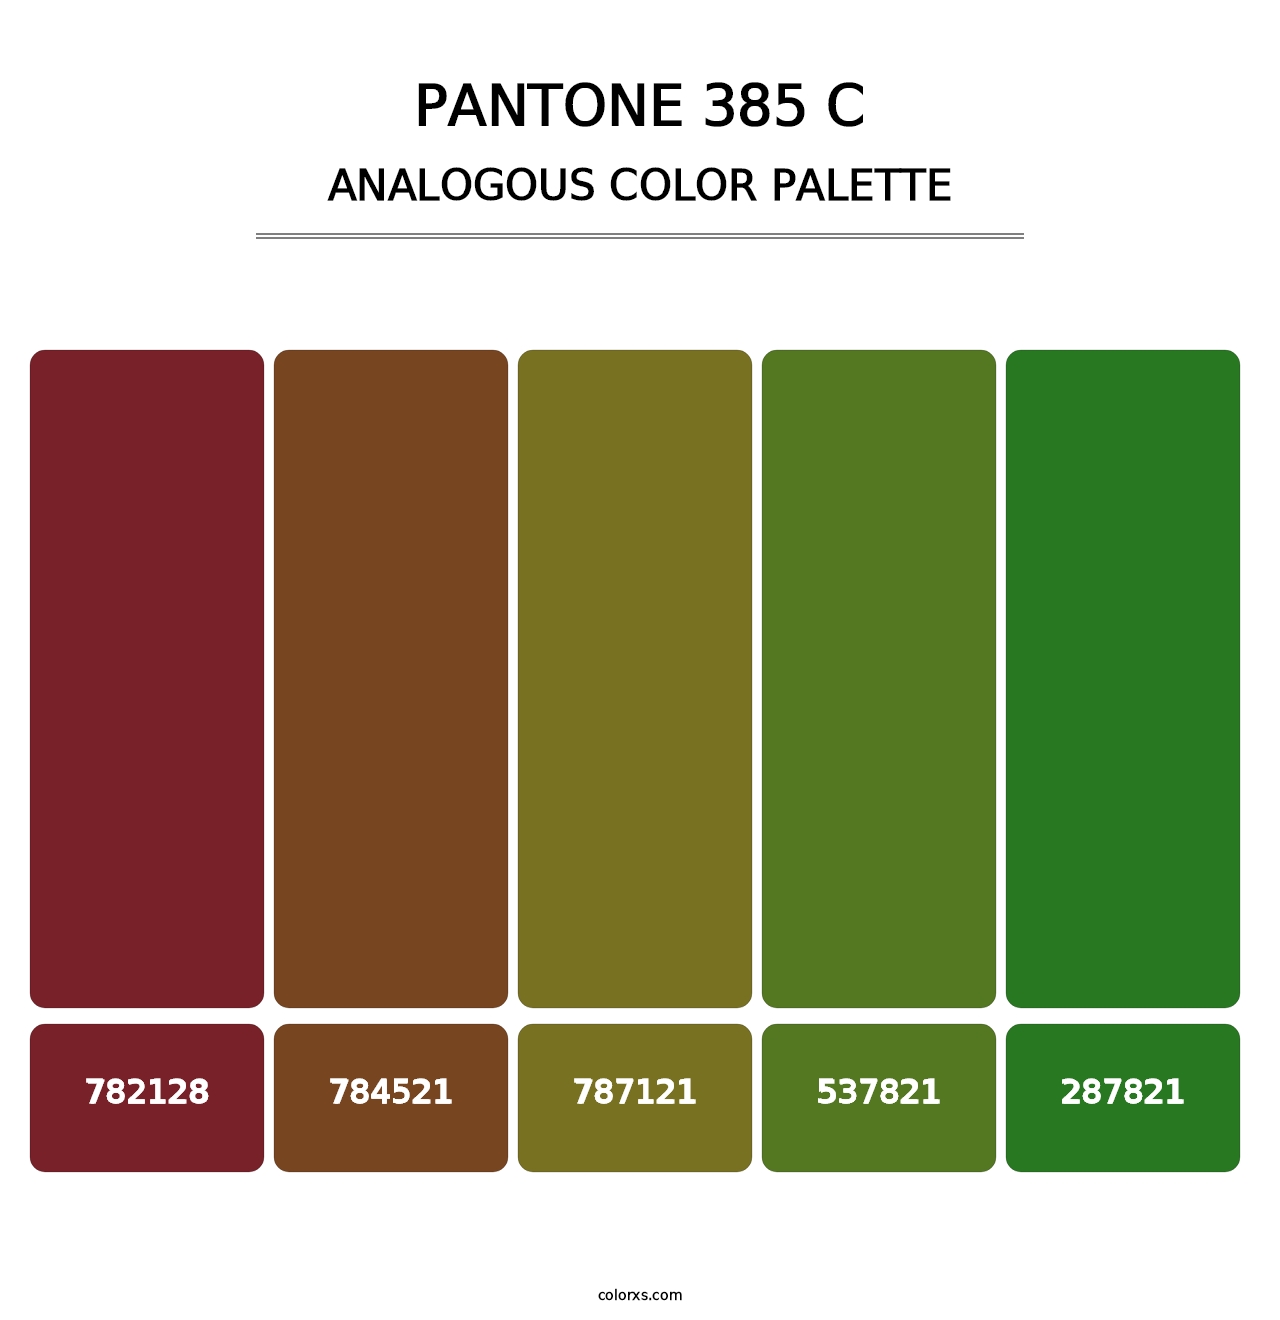 PANTONE 385 C - Analogous Color Palette